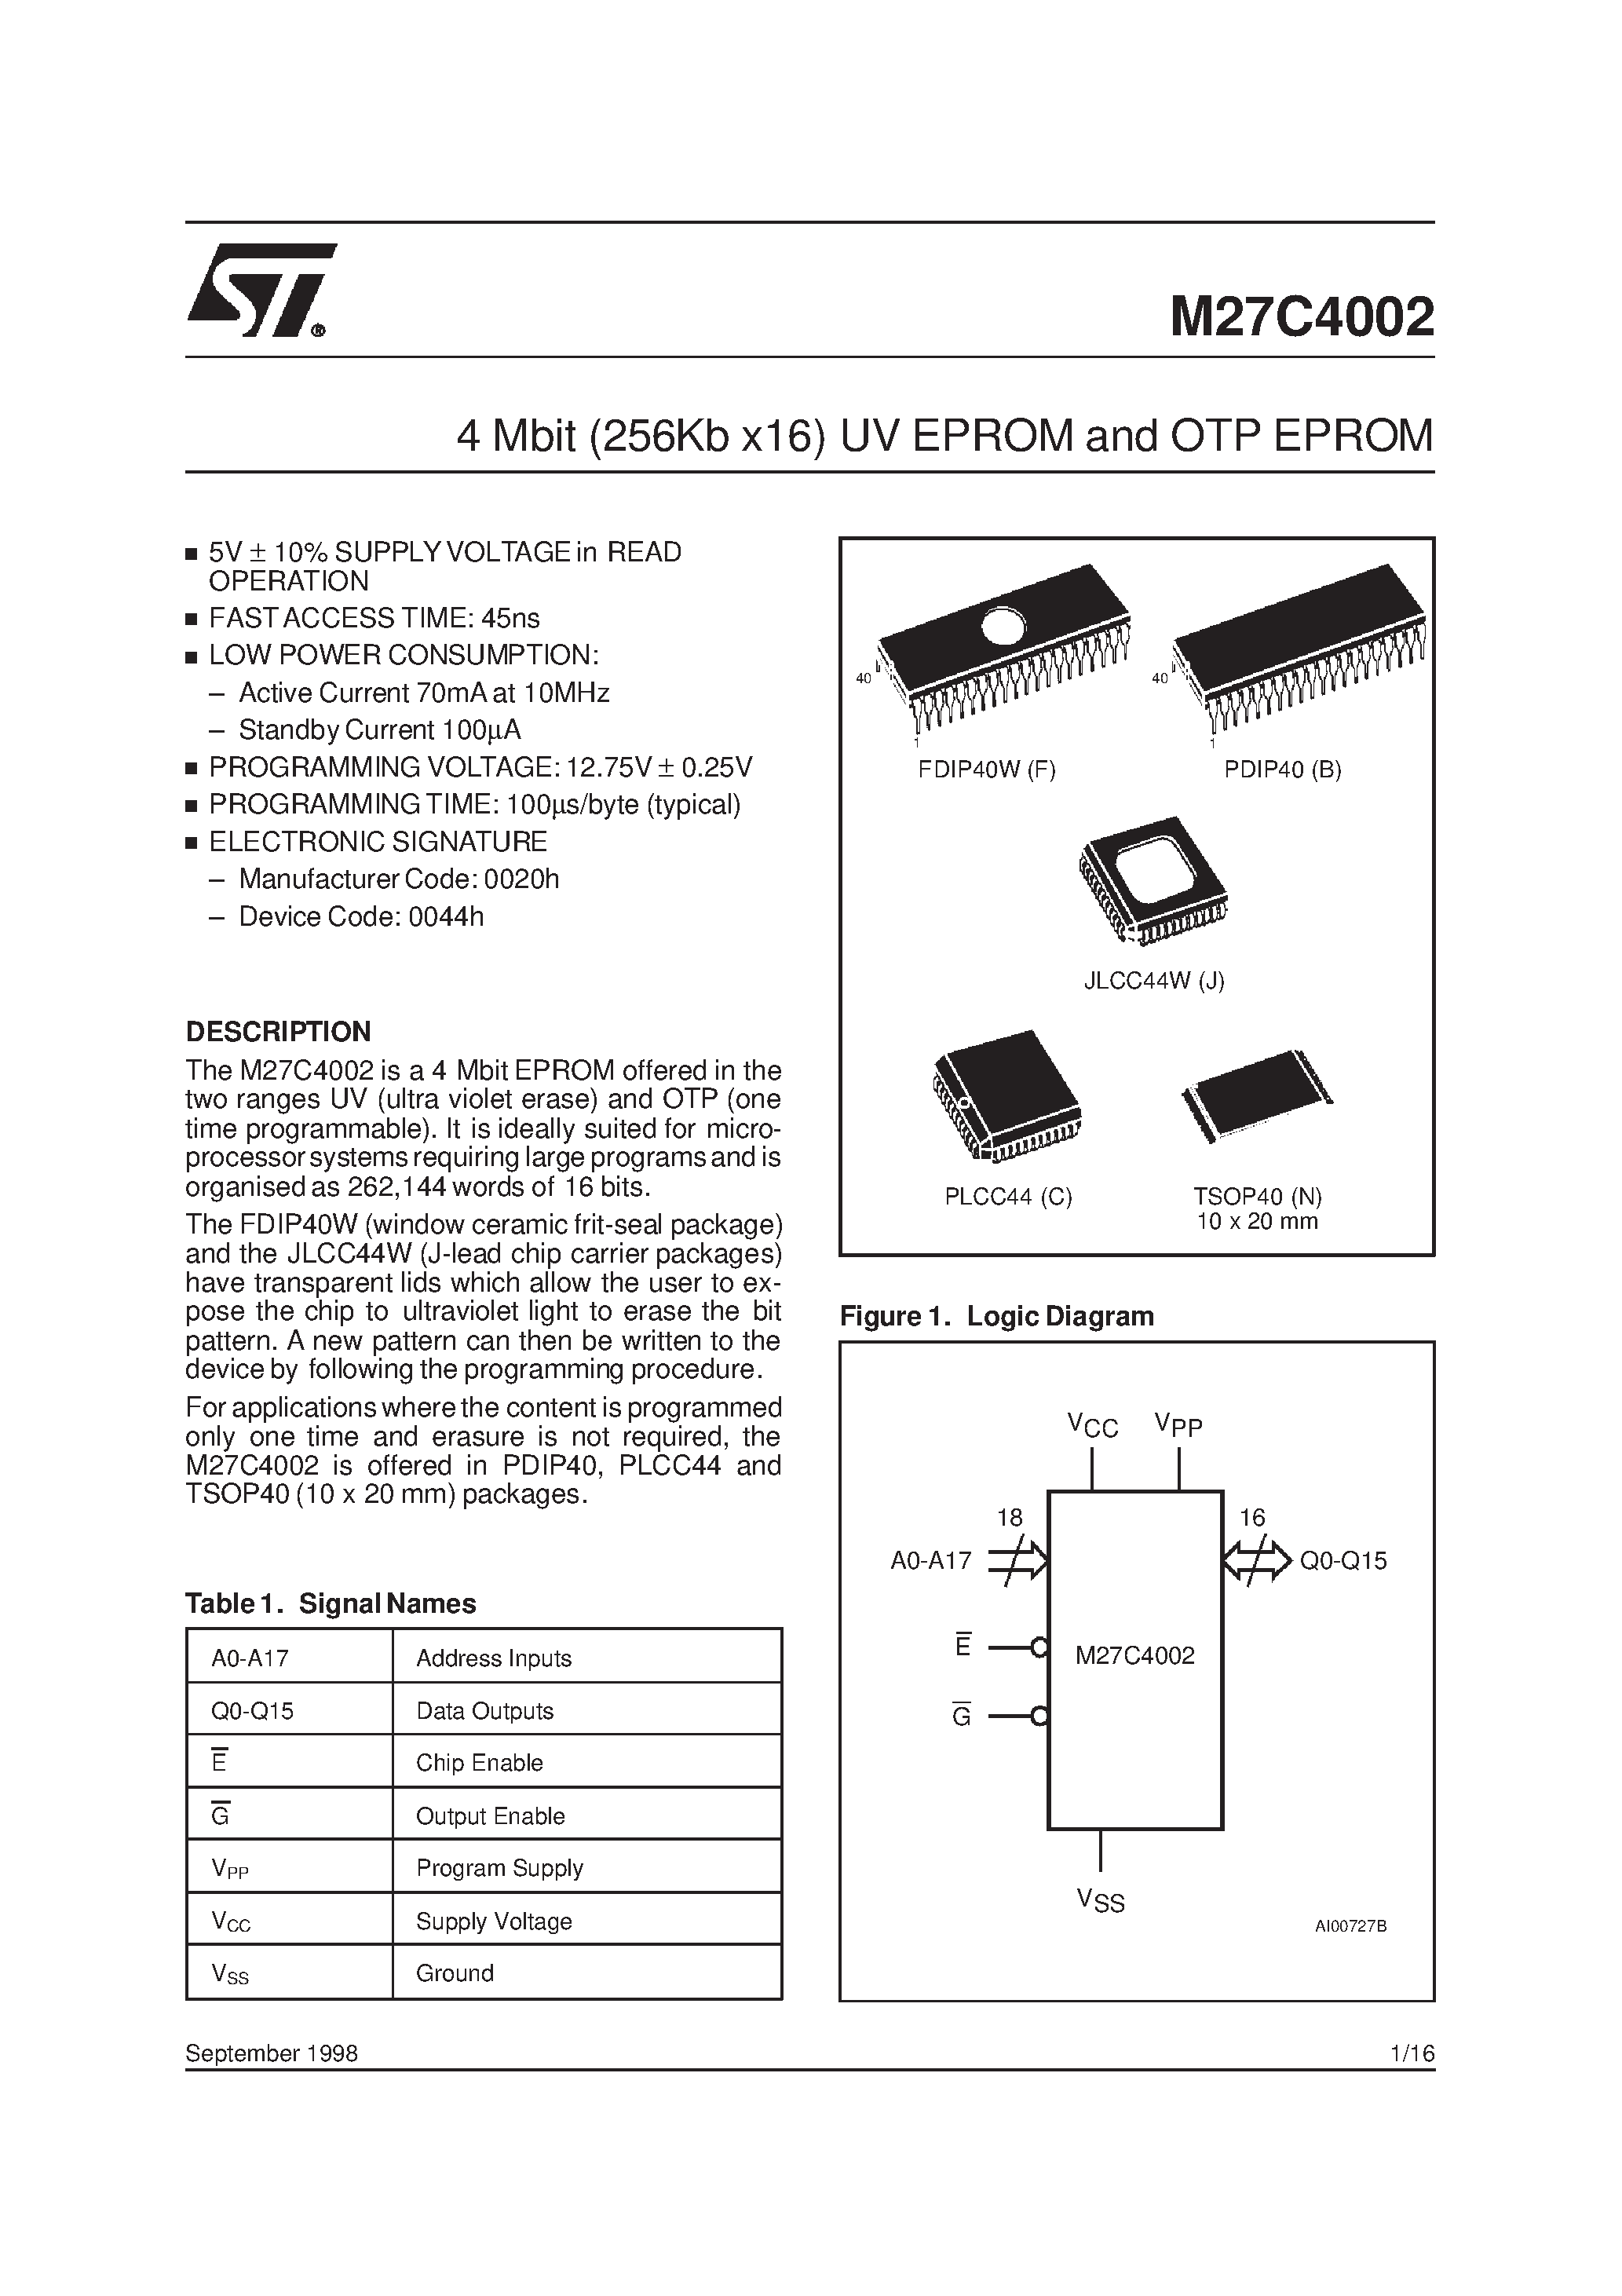 Datasheet M27C4002-10XJ6X - 4 Mbit 256Kb x16 UV EPROM and OTP EPROM page 1